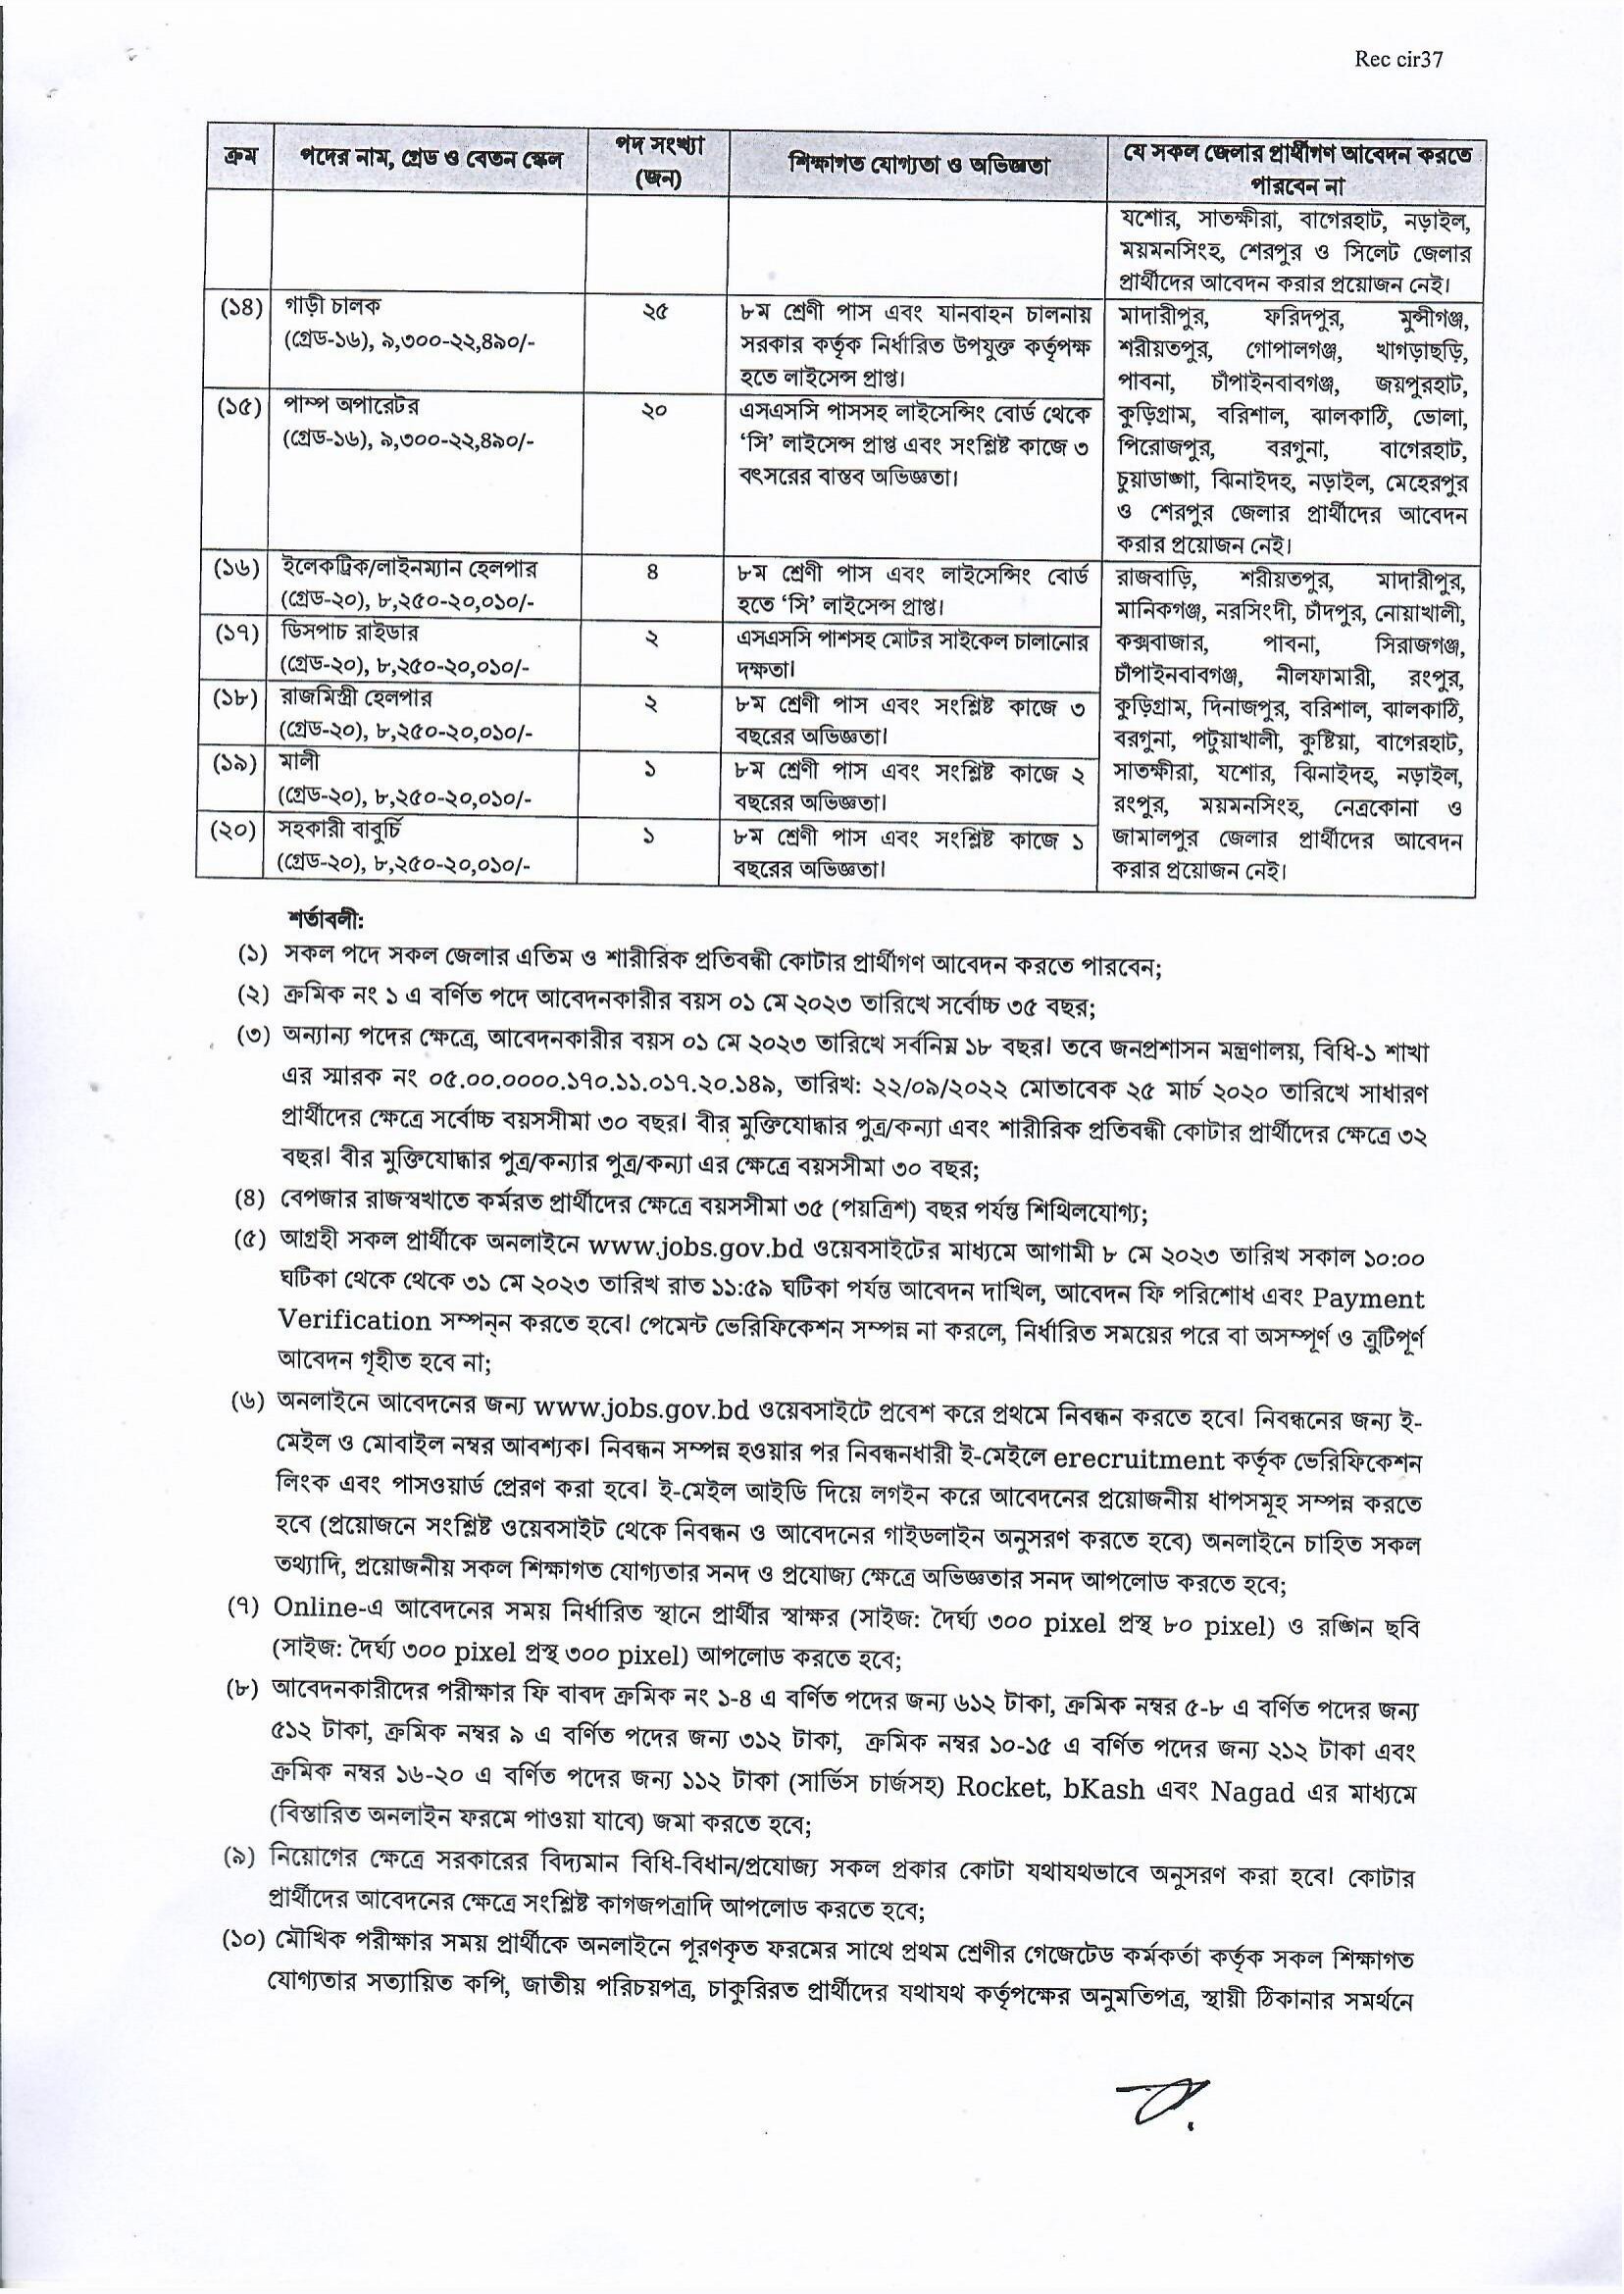 বাংলাদেশ রপ্তানি প্রক্রিয়াকরণ এলাকা (বেপজা) নিয়োগ ২০২৩ সার্কুলার - Bangladesh Export Processing Zones Authority (BEPZA) Job Circular 2023 - বেপজা নিয়োগ ২০২৩ সার্কুলার - BEPZA Job Circular 2023